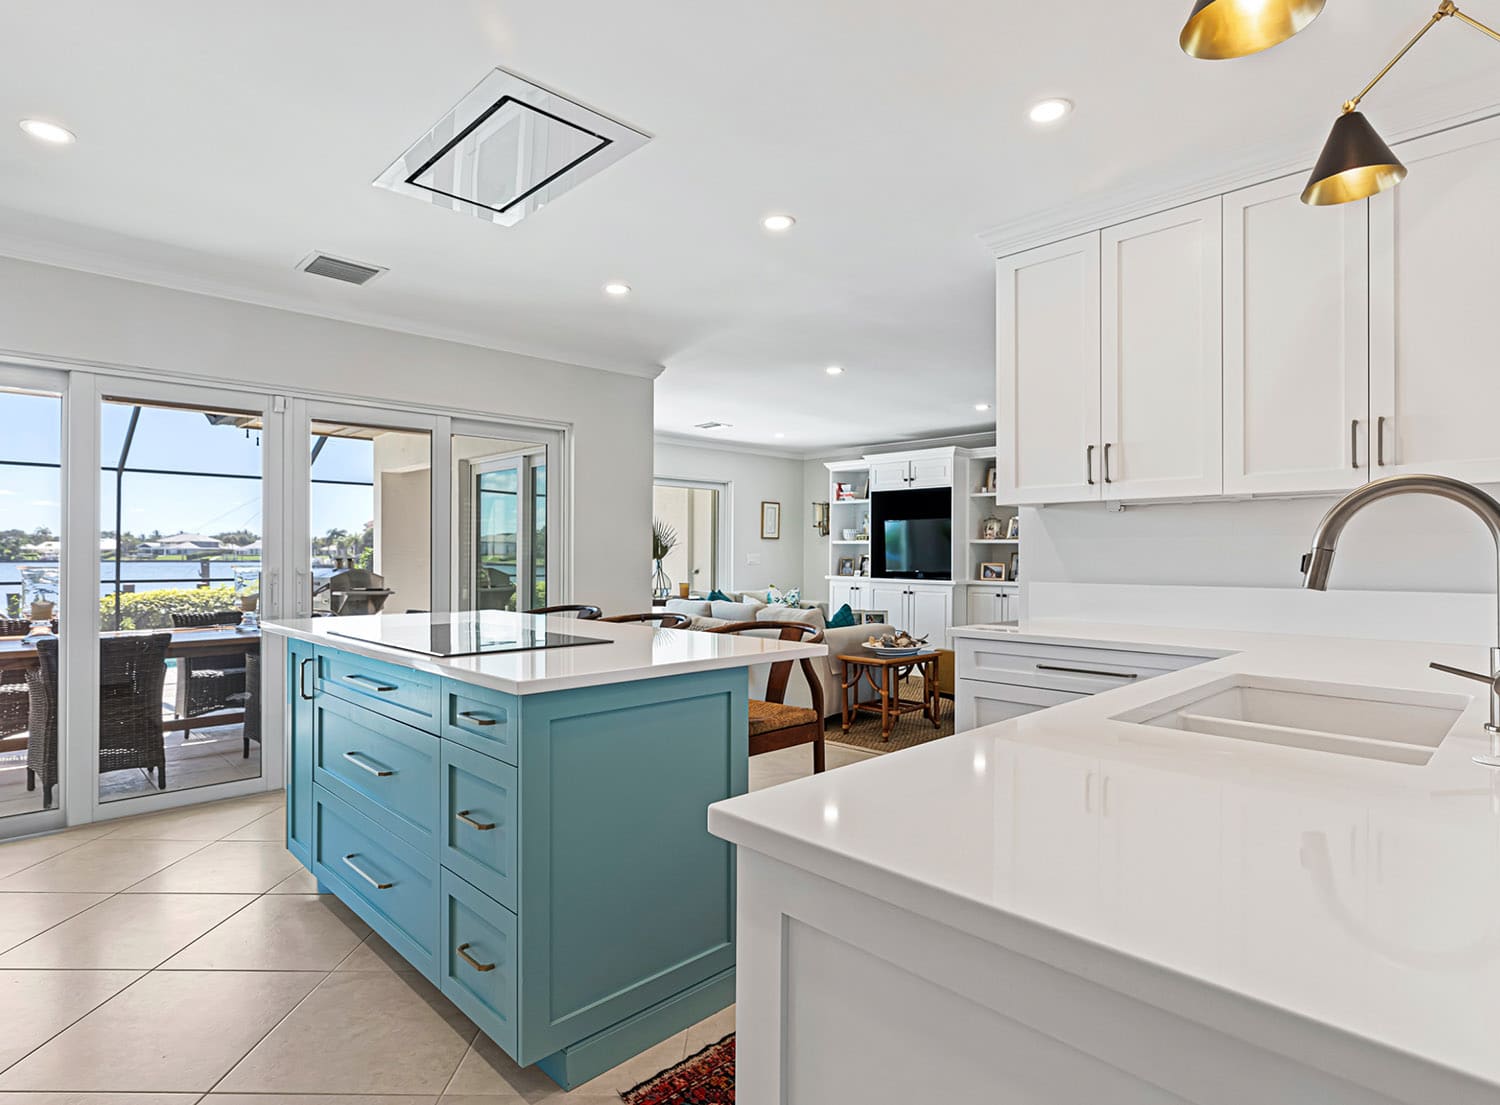 Coastal Design kitchens to inspire you to go coastal.